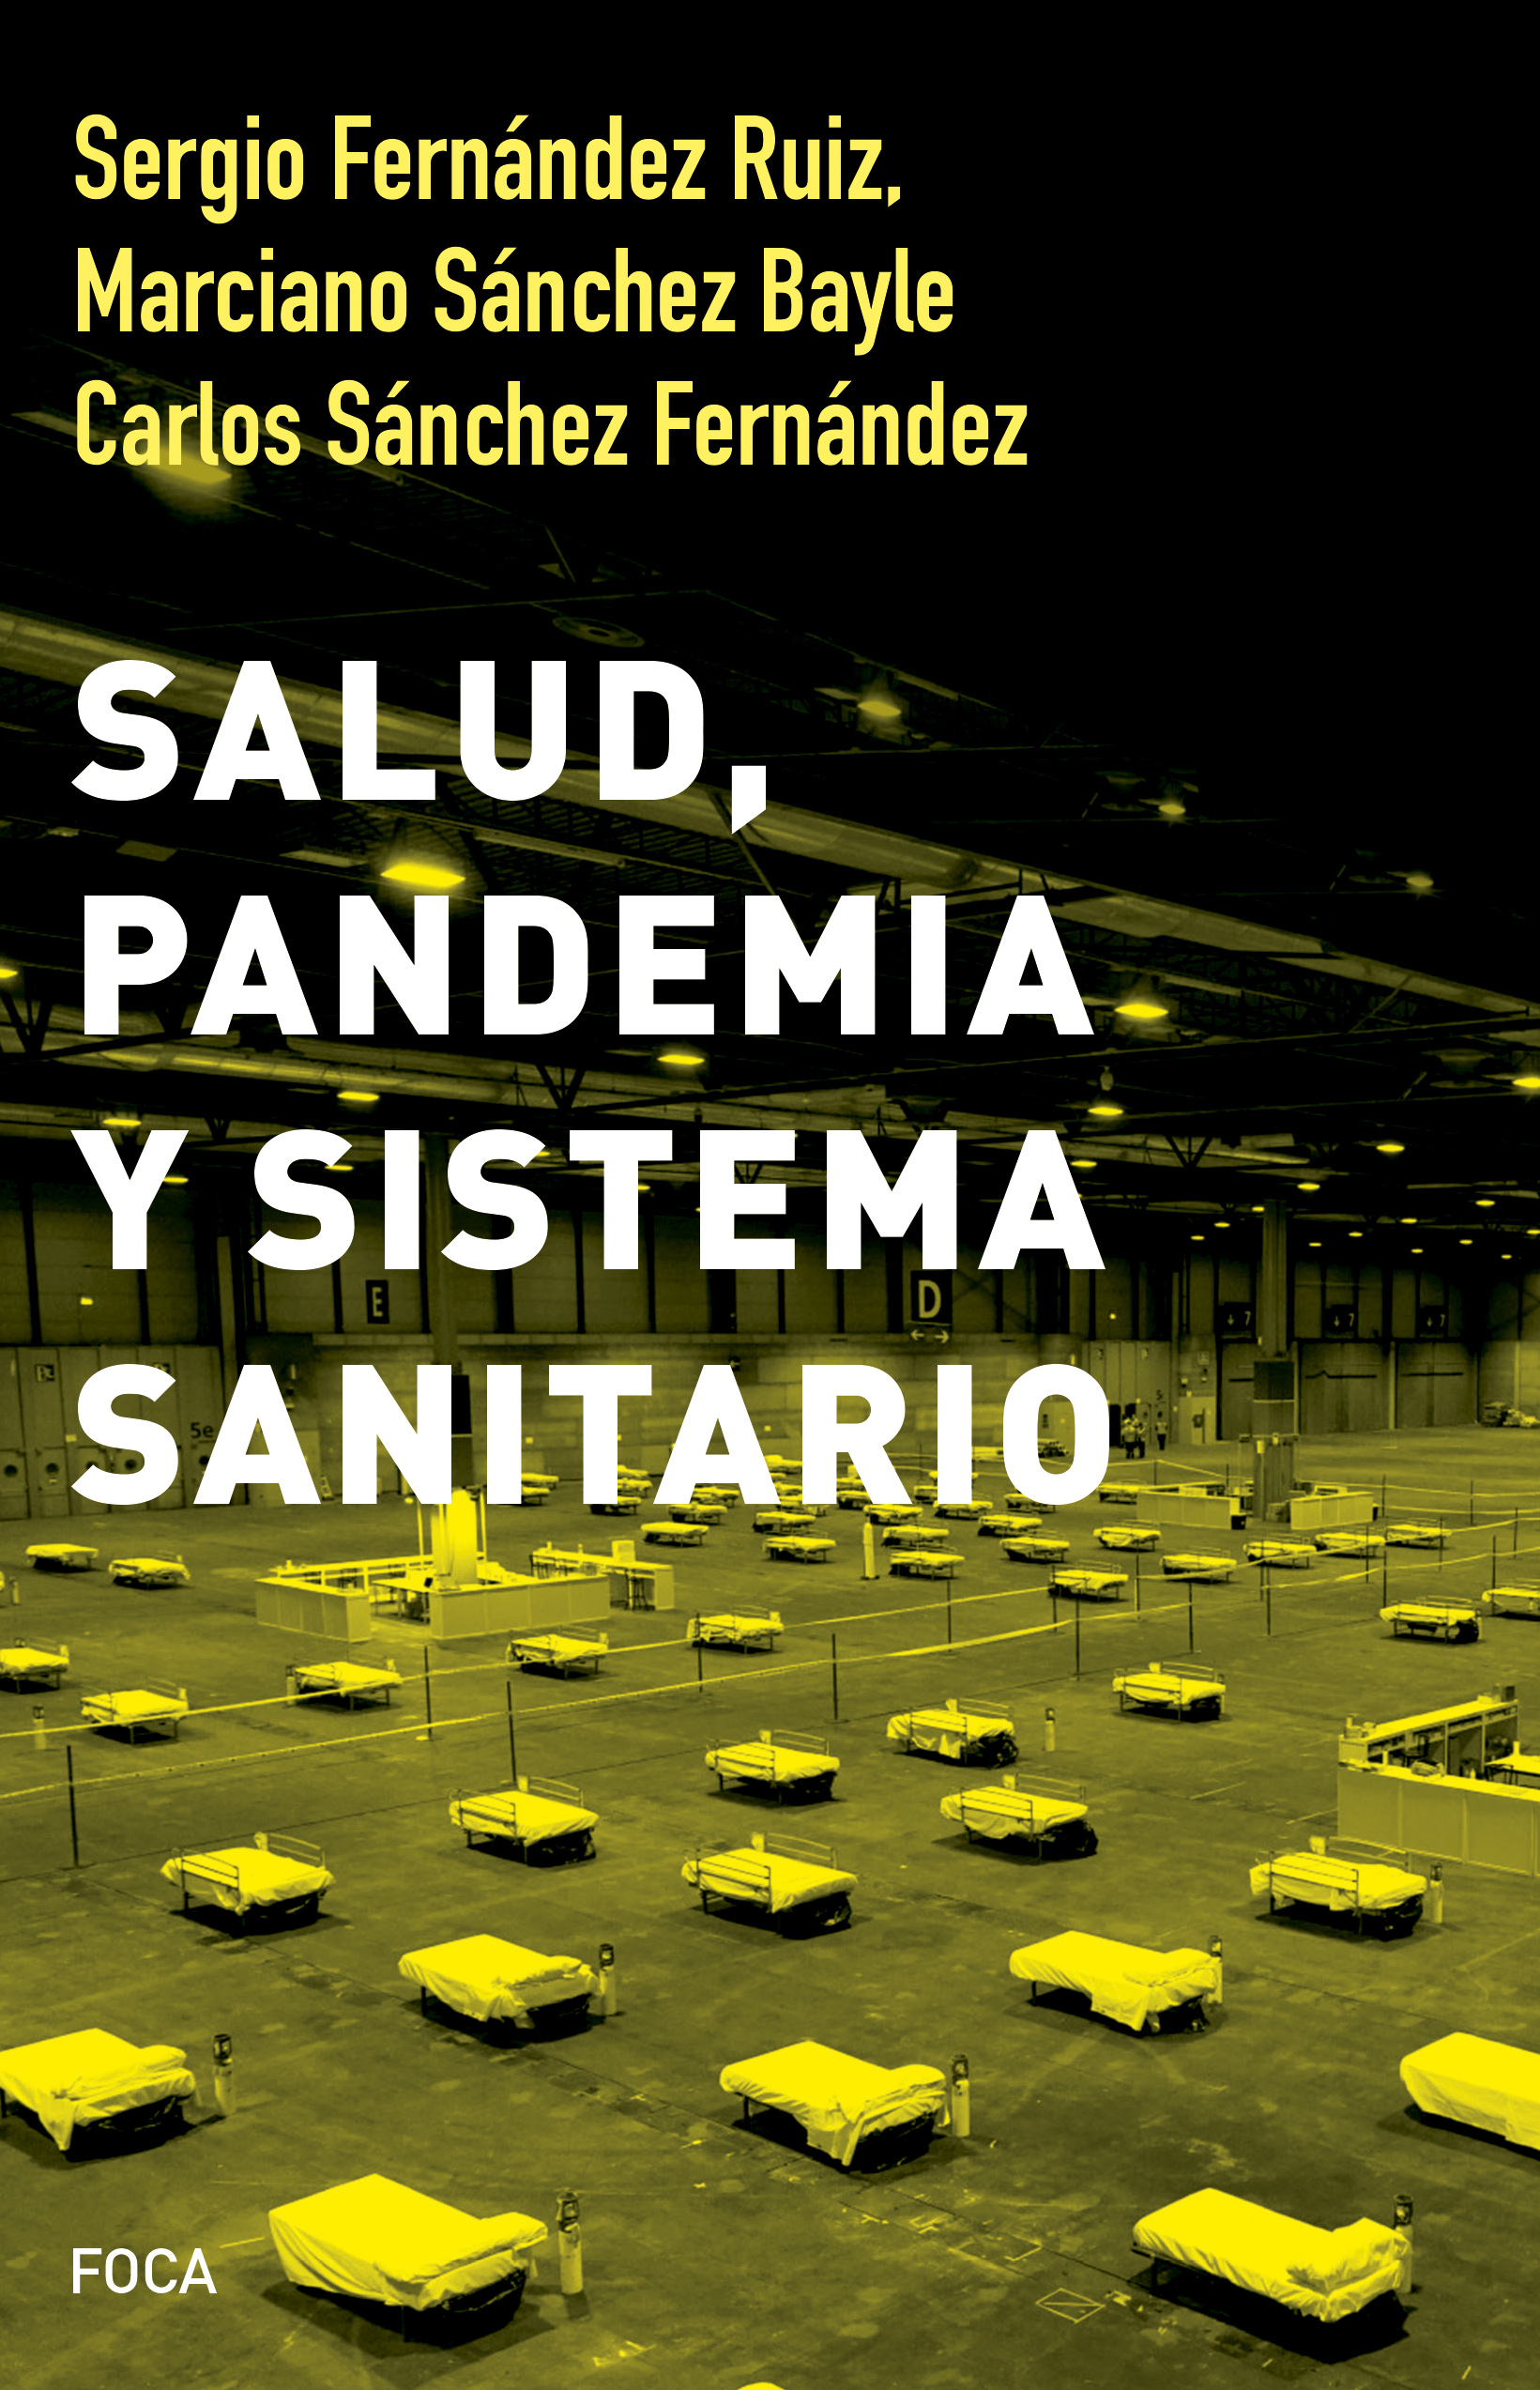 Salud, pandemia y sistema sanitario - Sergio Sánchez Fernández Ruiz